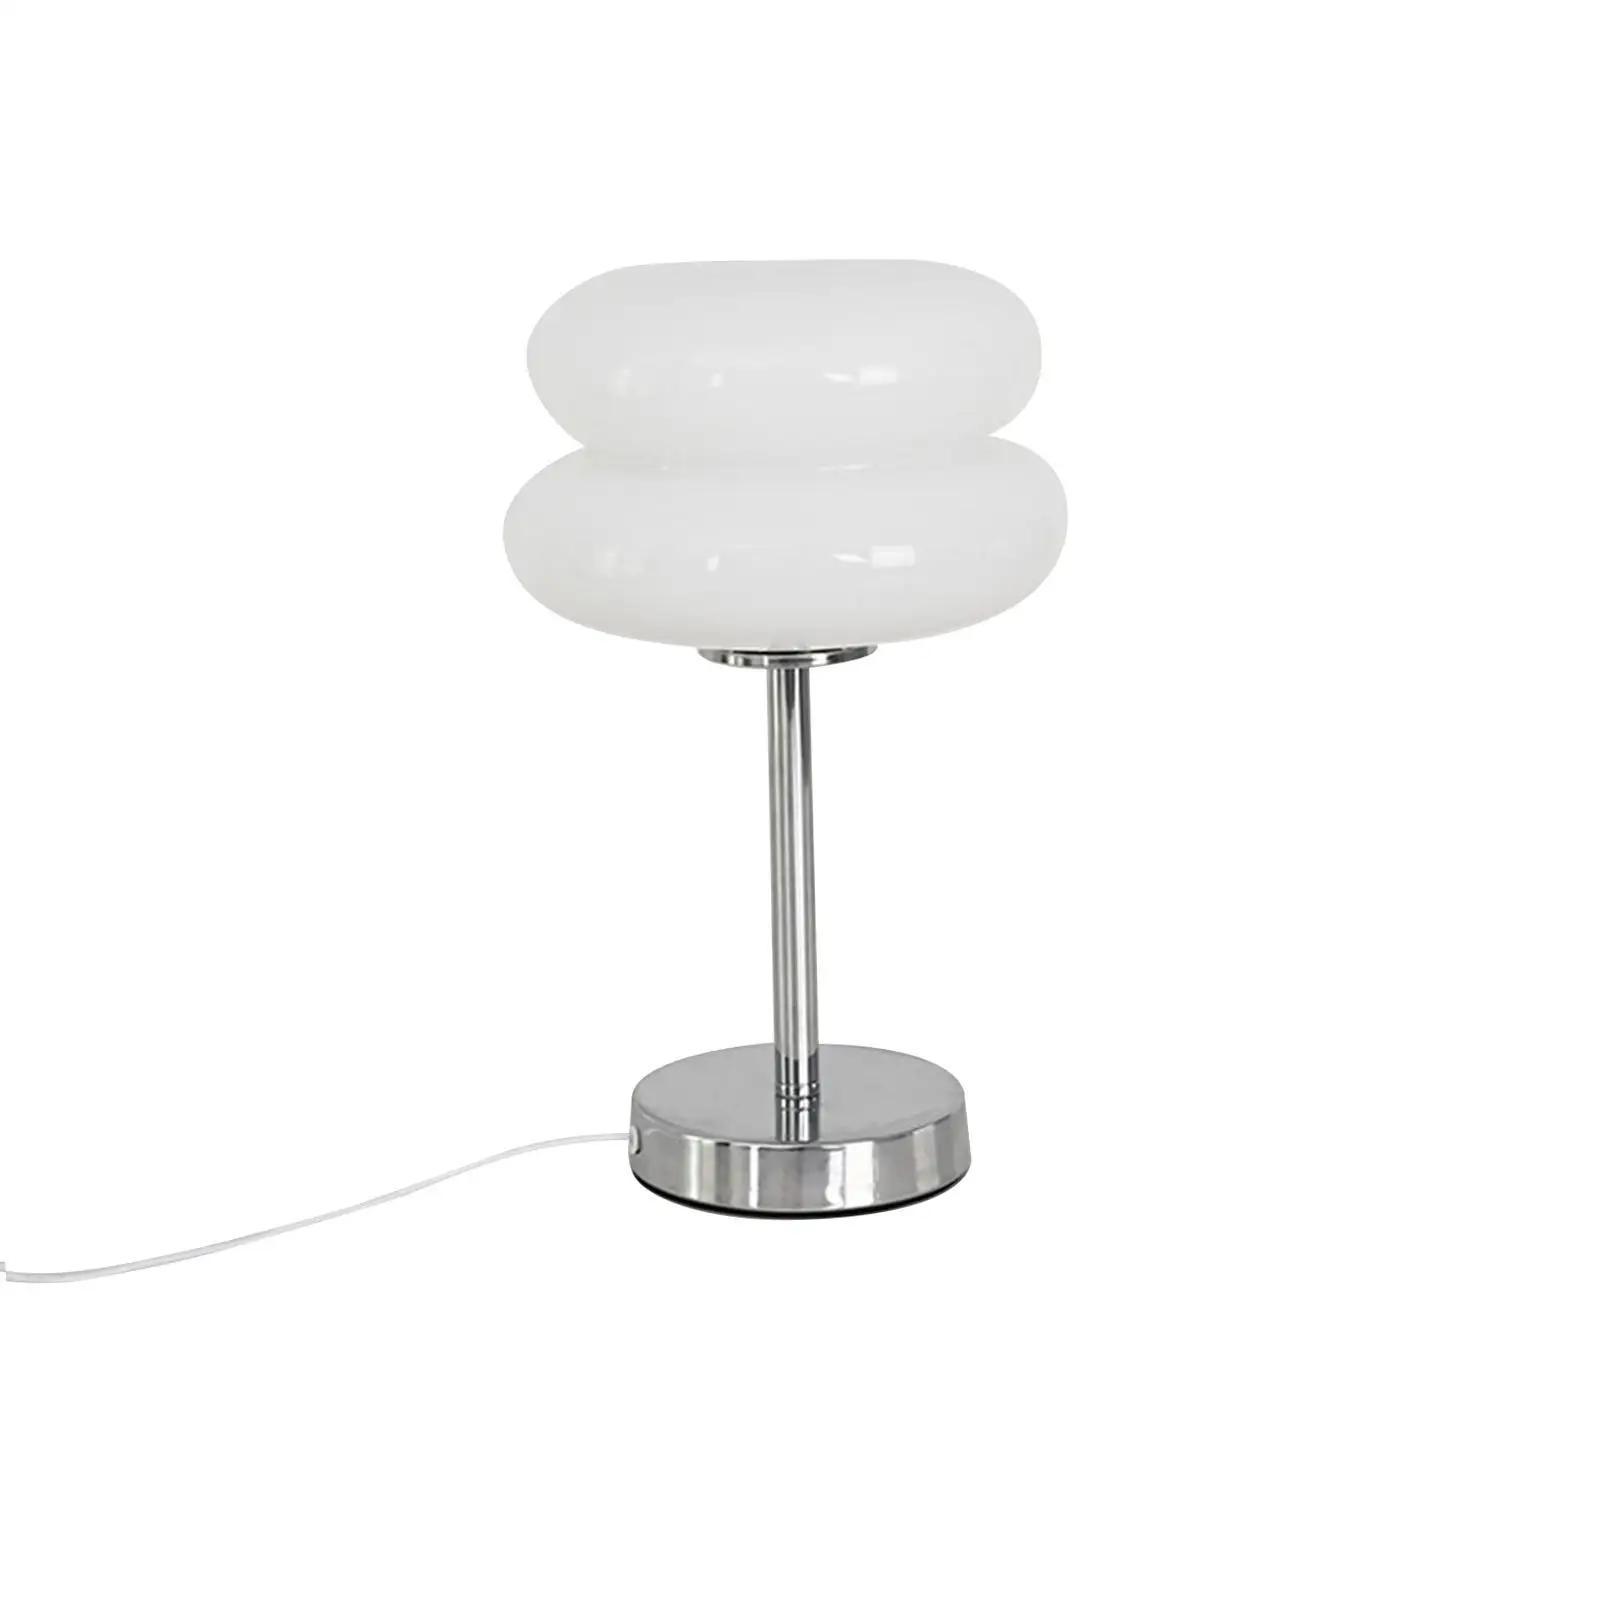 

Egg Tart Mushroom Lamp Fashionable Glass Table Light Study for Living Room